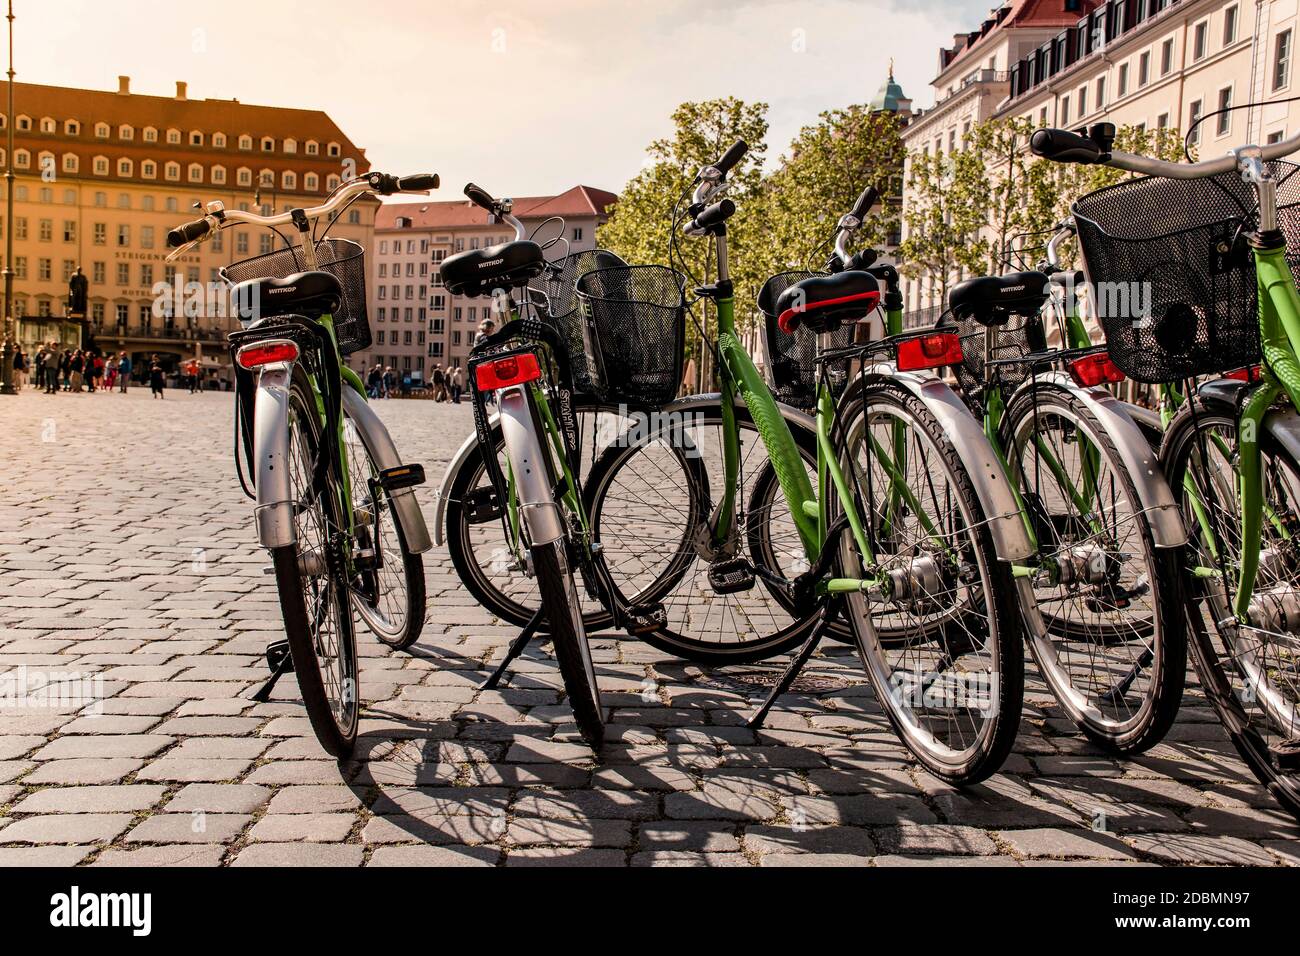 18 Maggio 2019 Dresda, Germania / Foto di viaggio di noleggio biciclette in Piazza Neustadt a Dresda. Dettagli nitidi della moto e del bokeh atmosferico Foto Stock